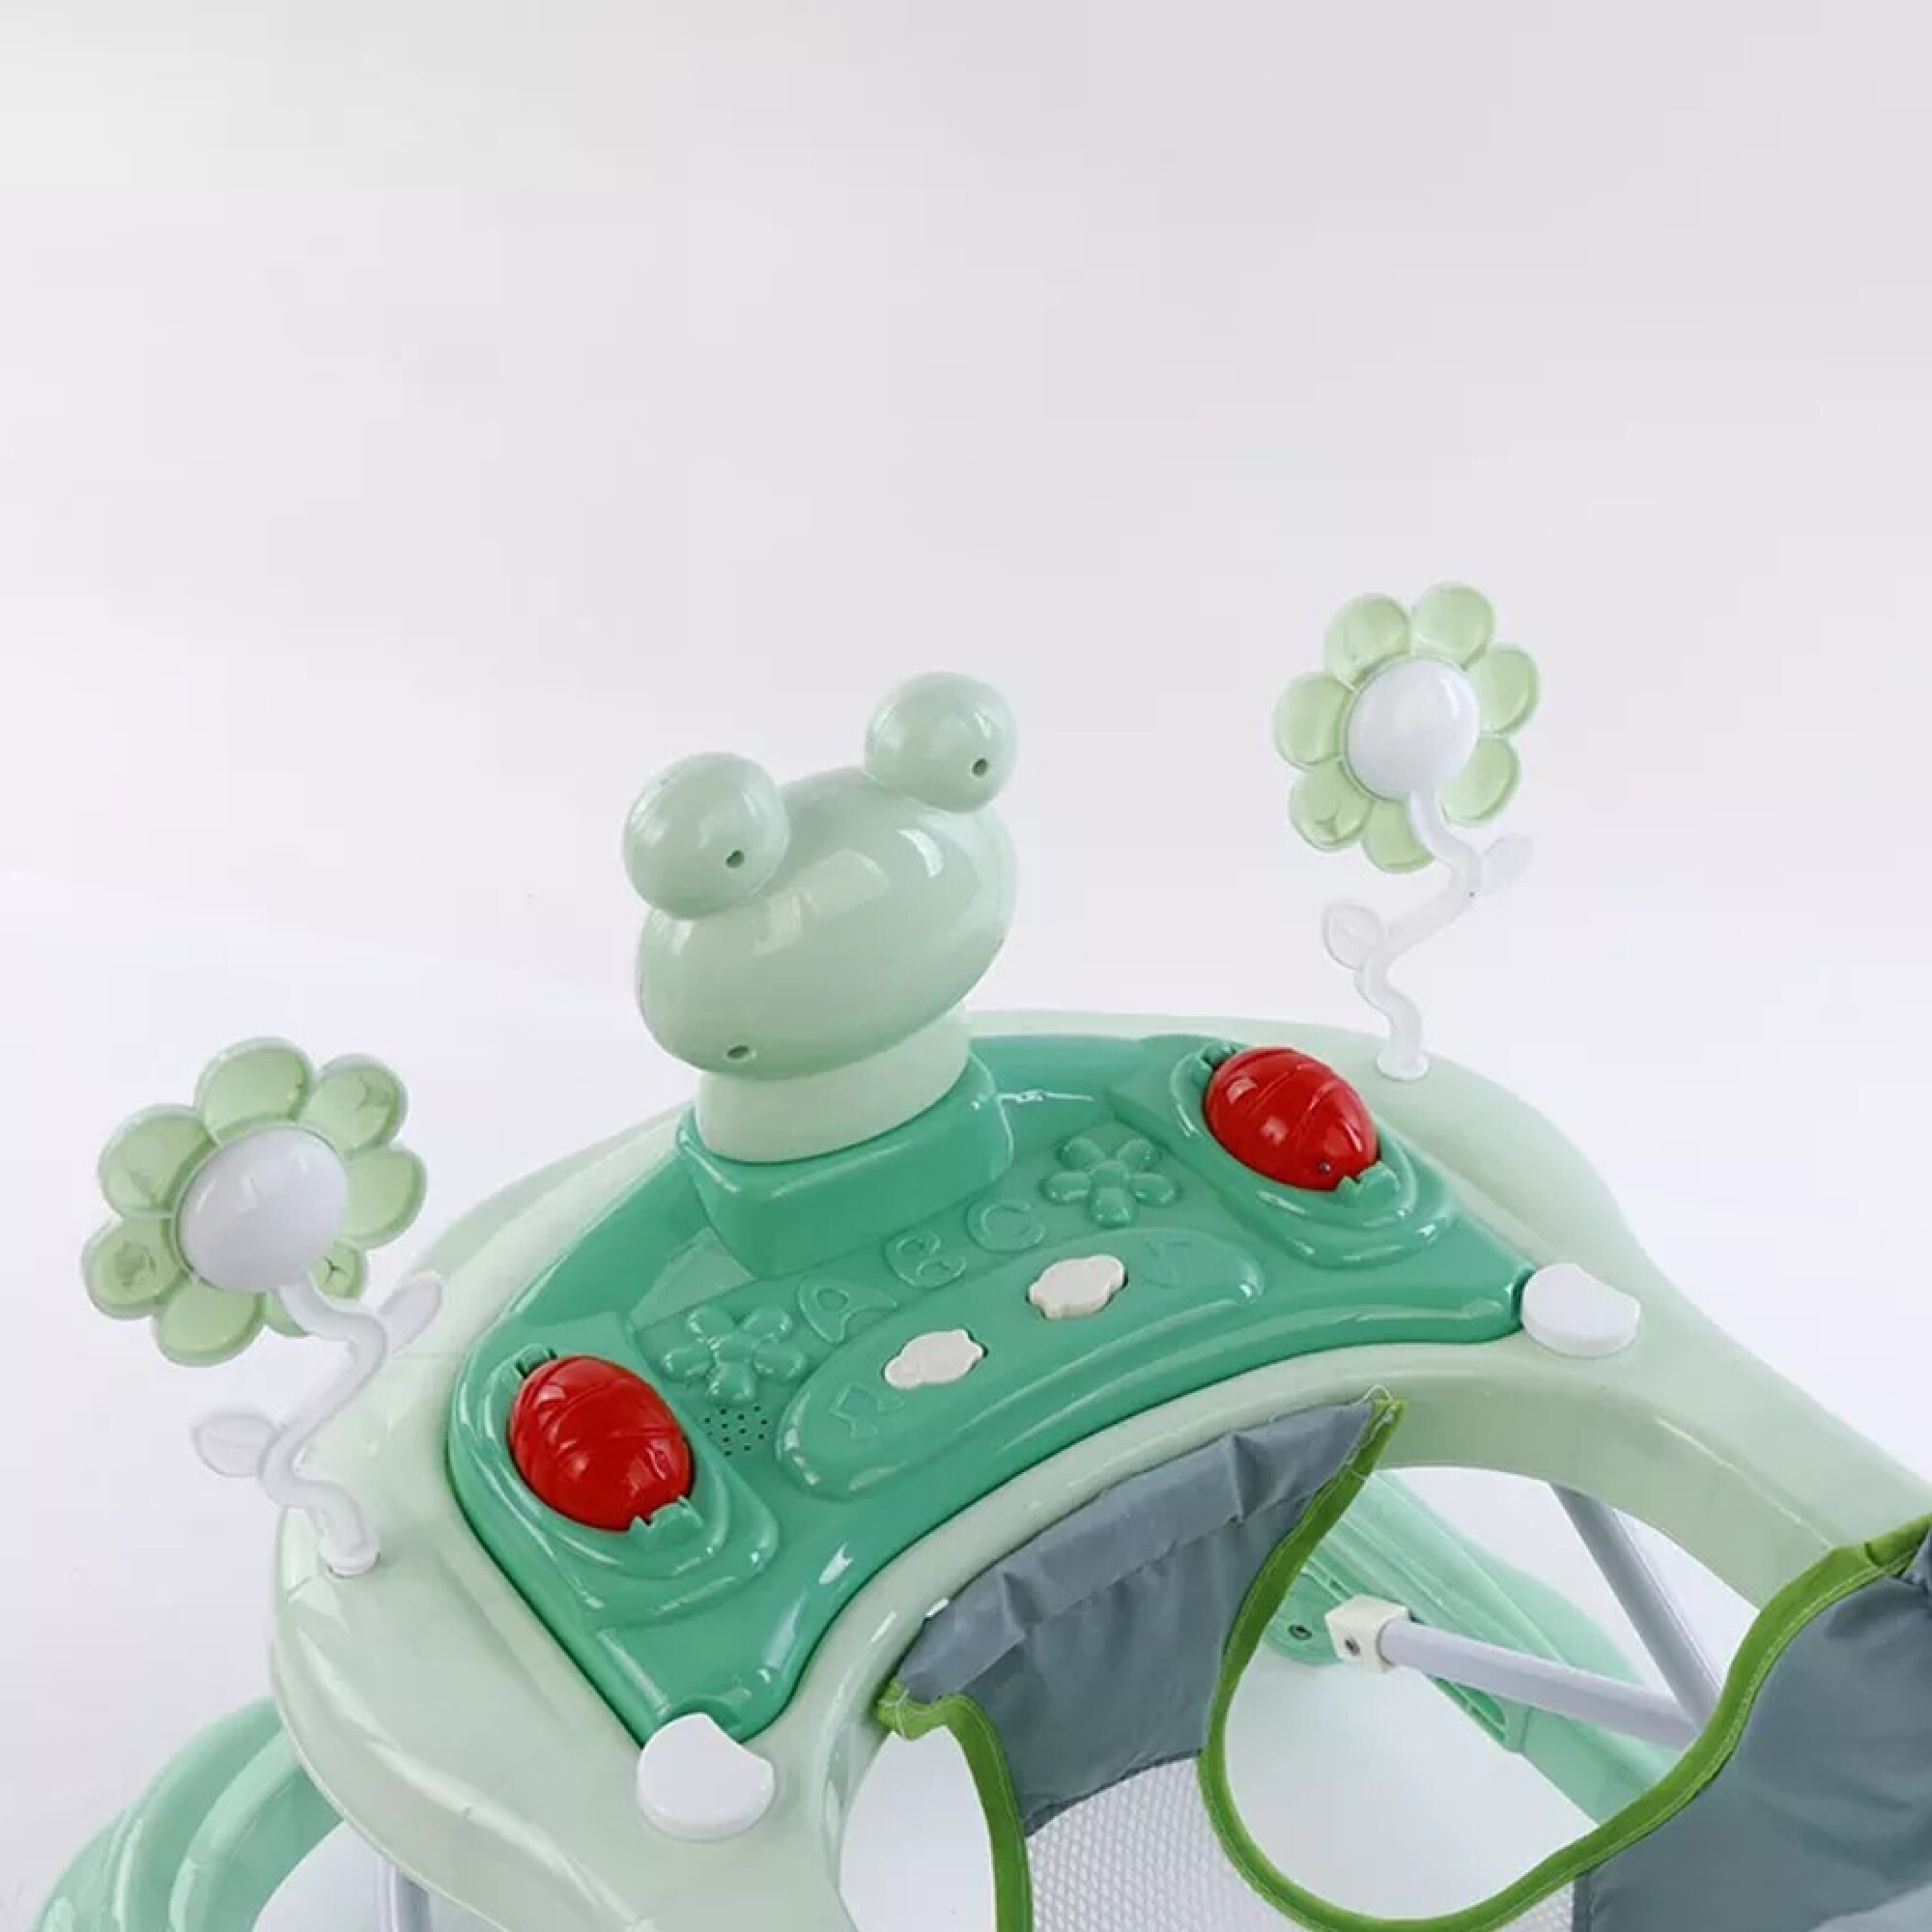 Caminador Andador Correpasillos Multifuncional Bebe - Verde GENERICO